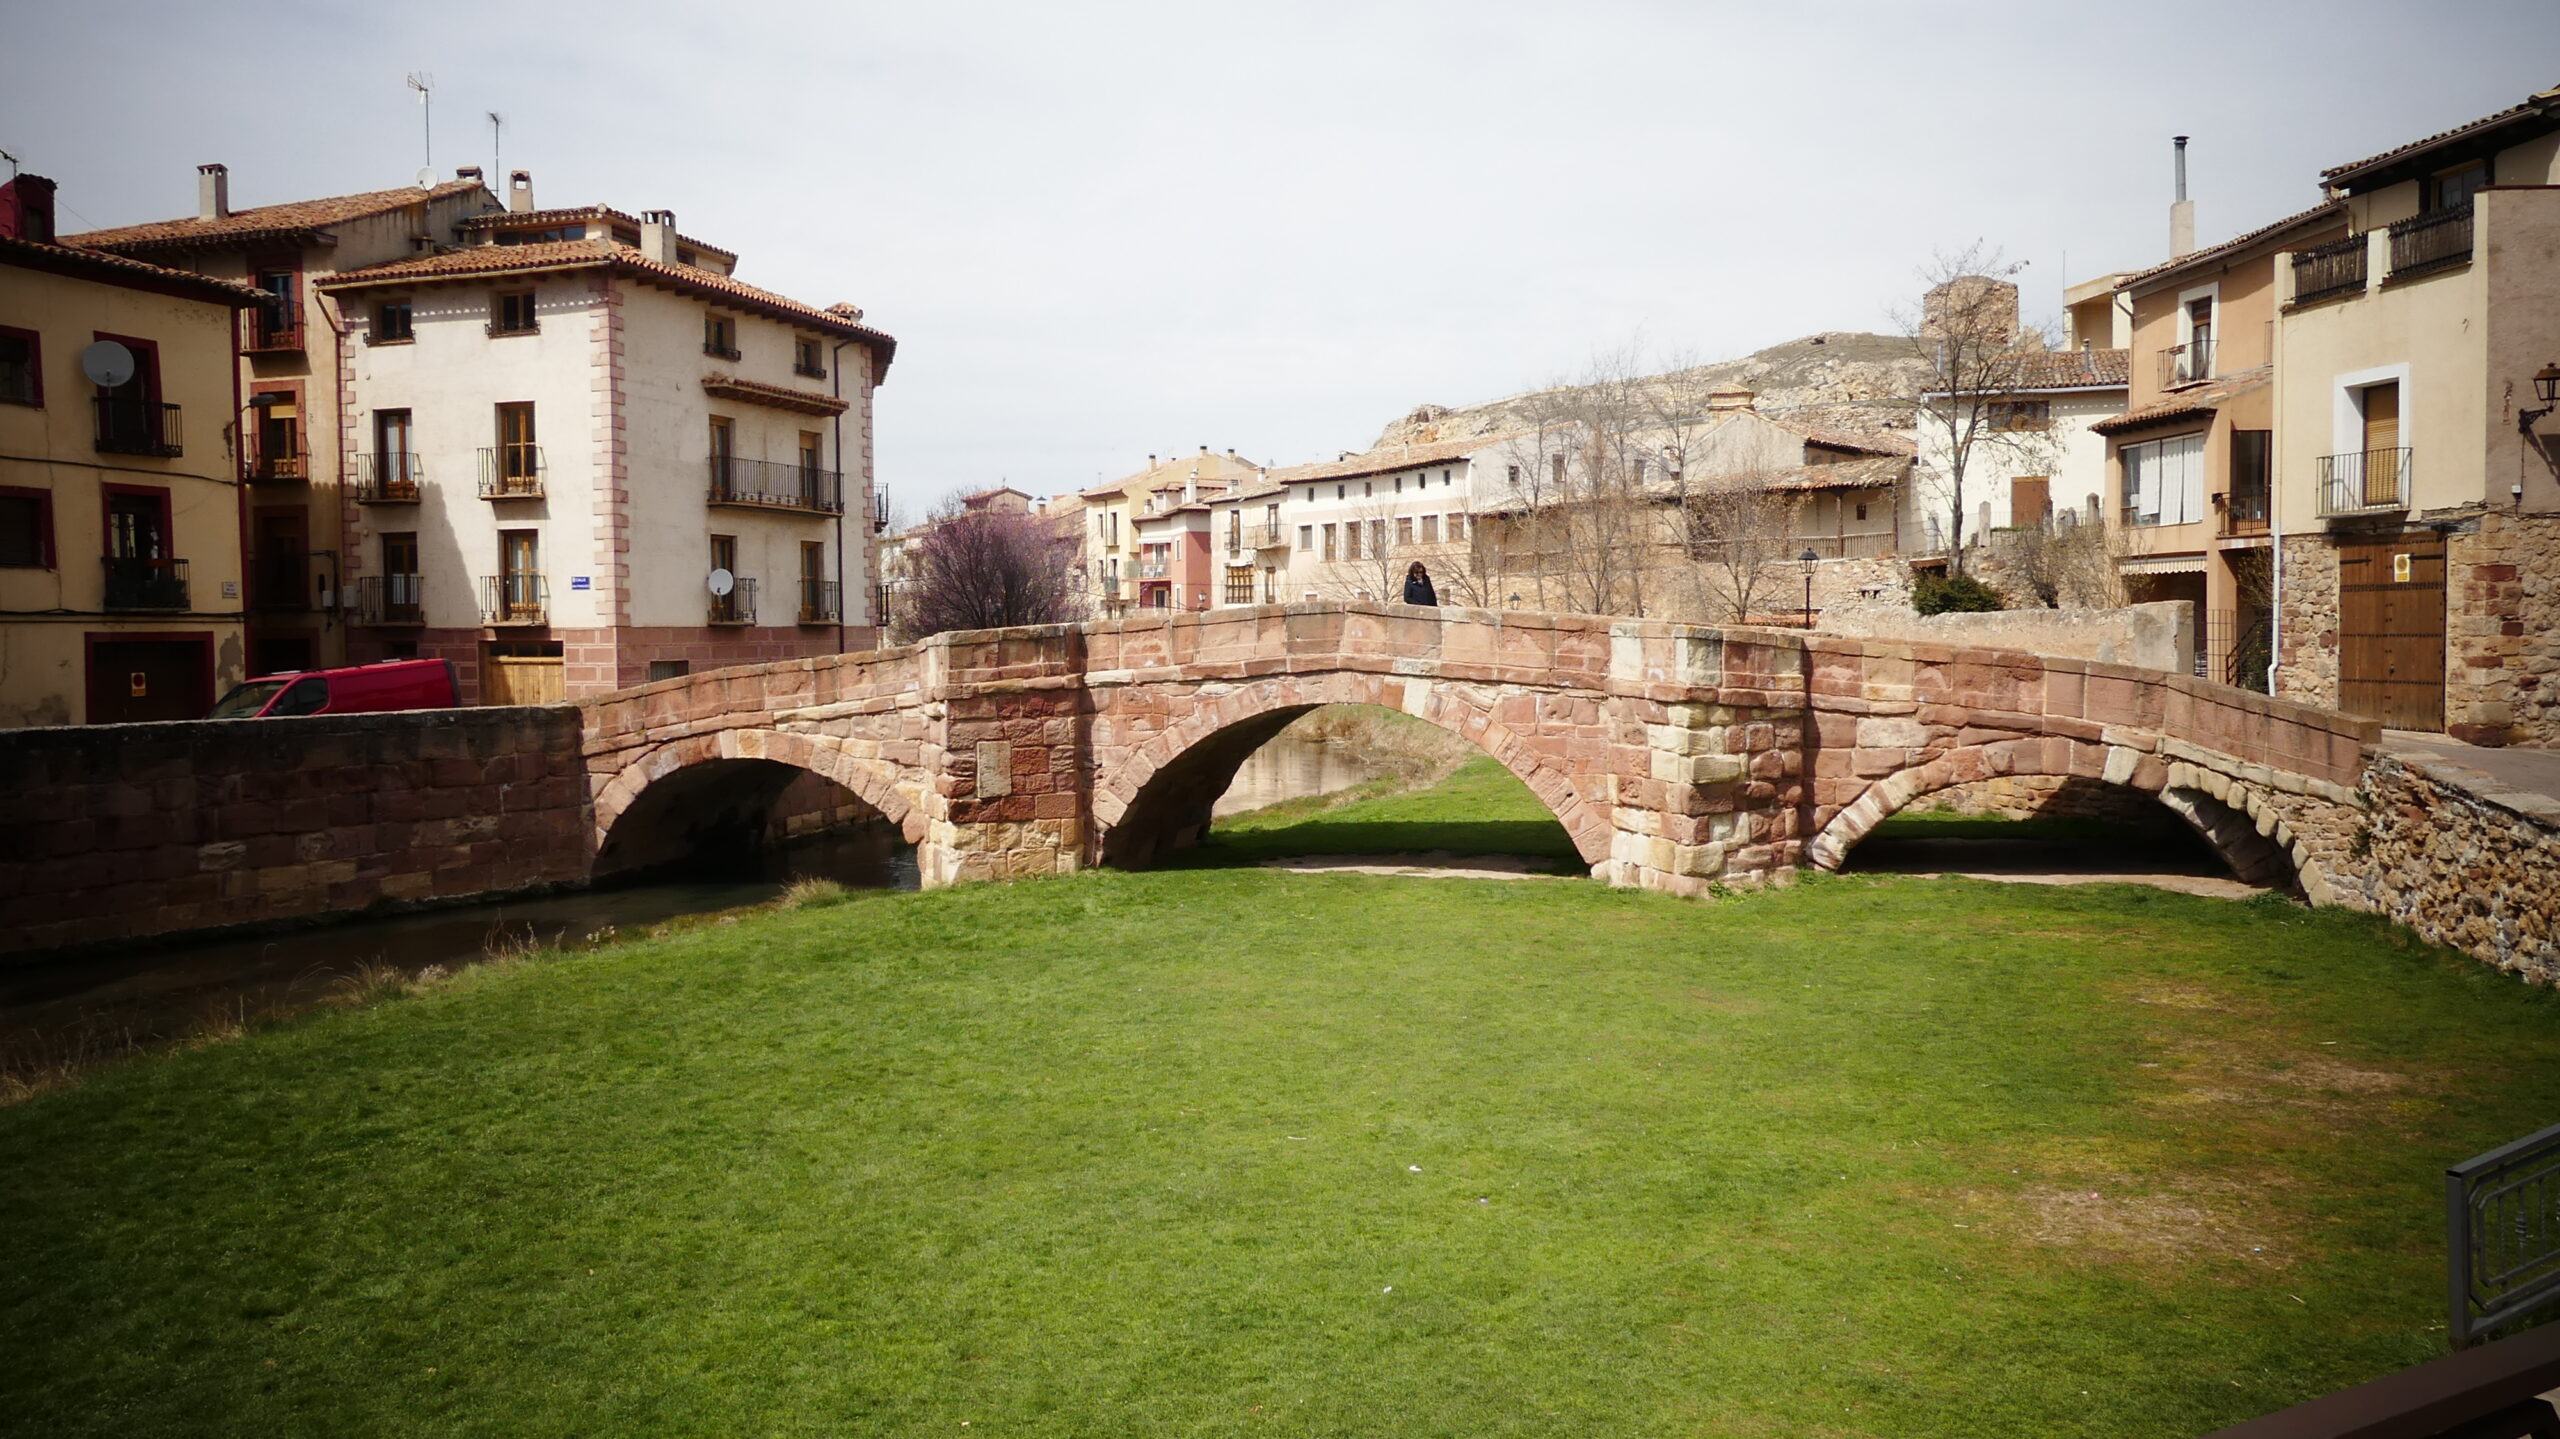 Molina de Aragón es muy reconocible por el puente románico sobre el río Gallo. (Foto: La Crónic@)